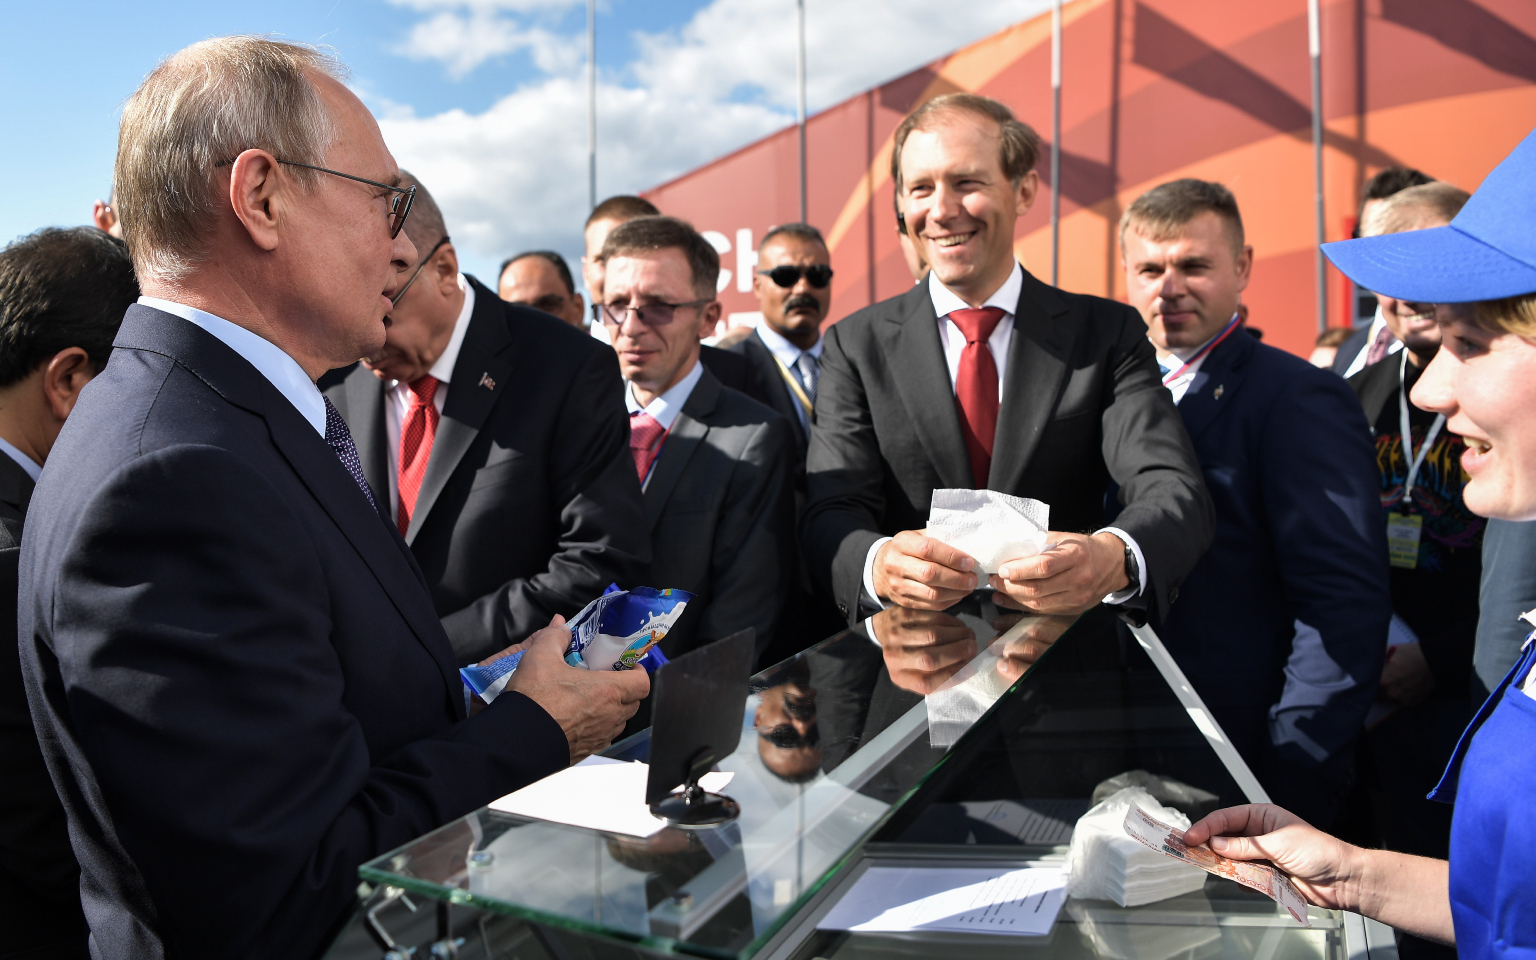 Та самая продавщица мороженого объяснила вторую встречу с Путиным на МАКС